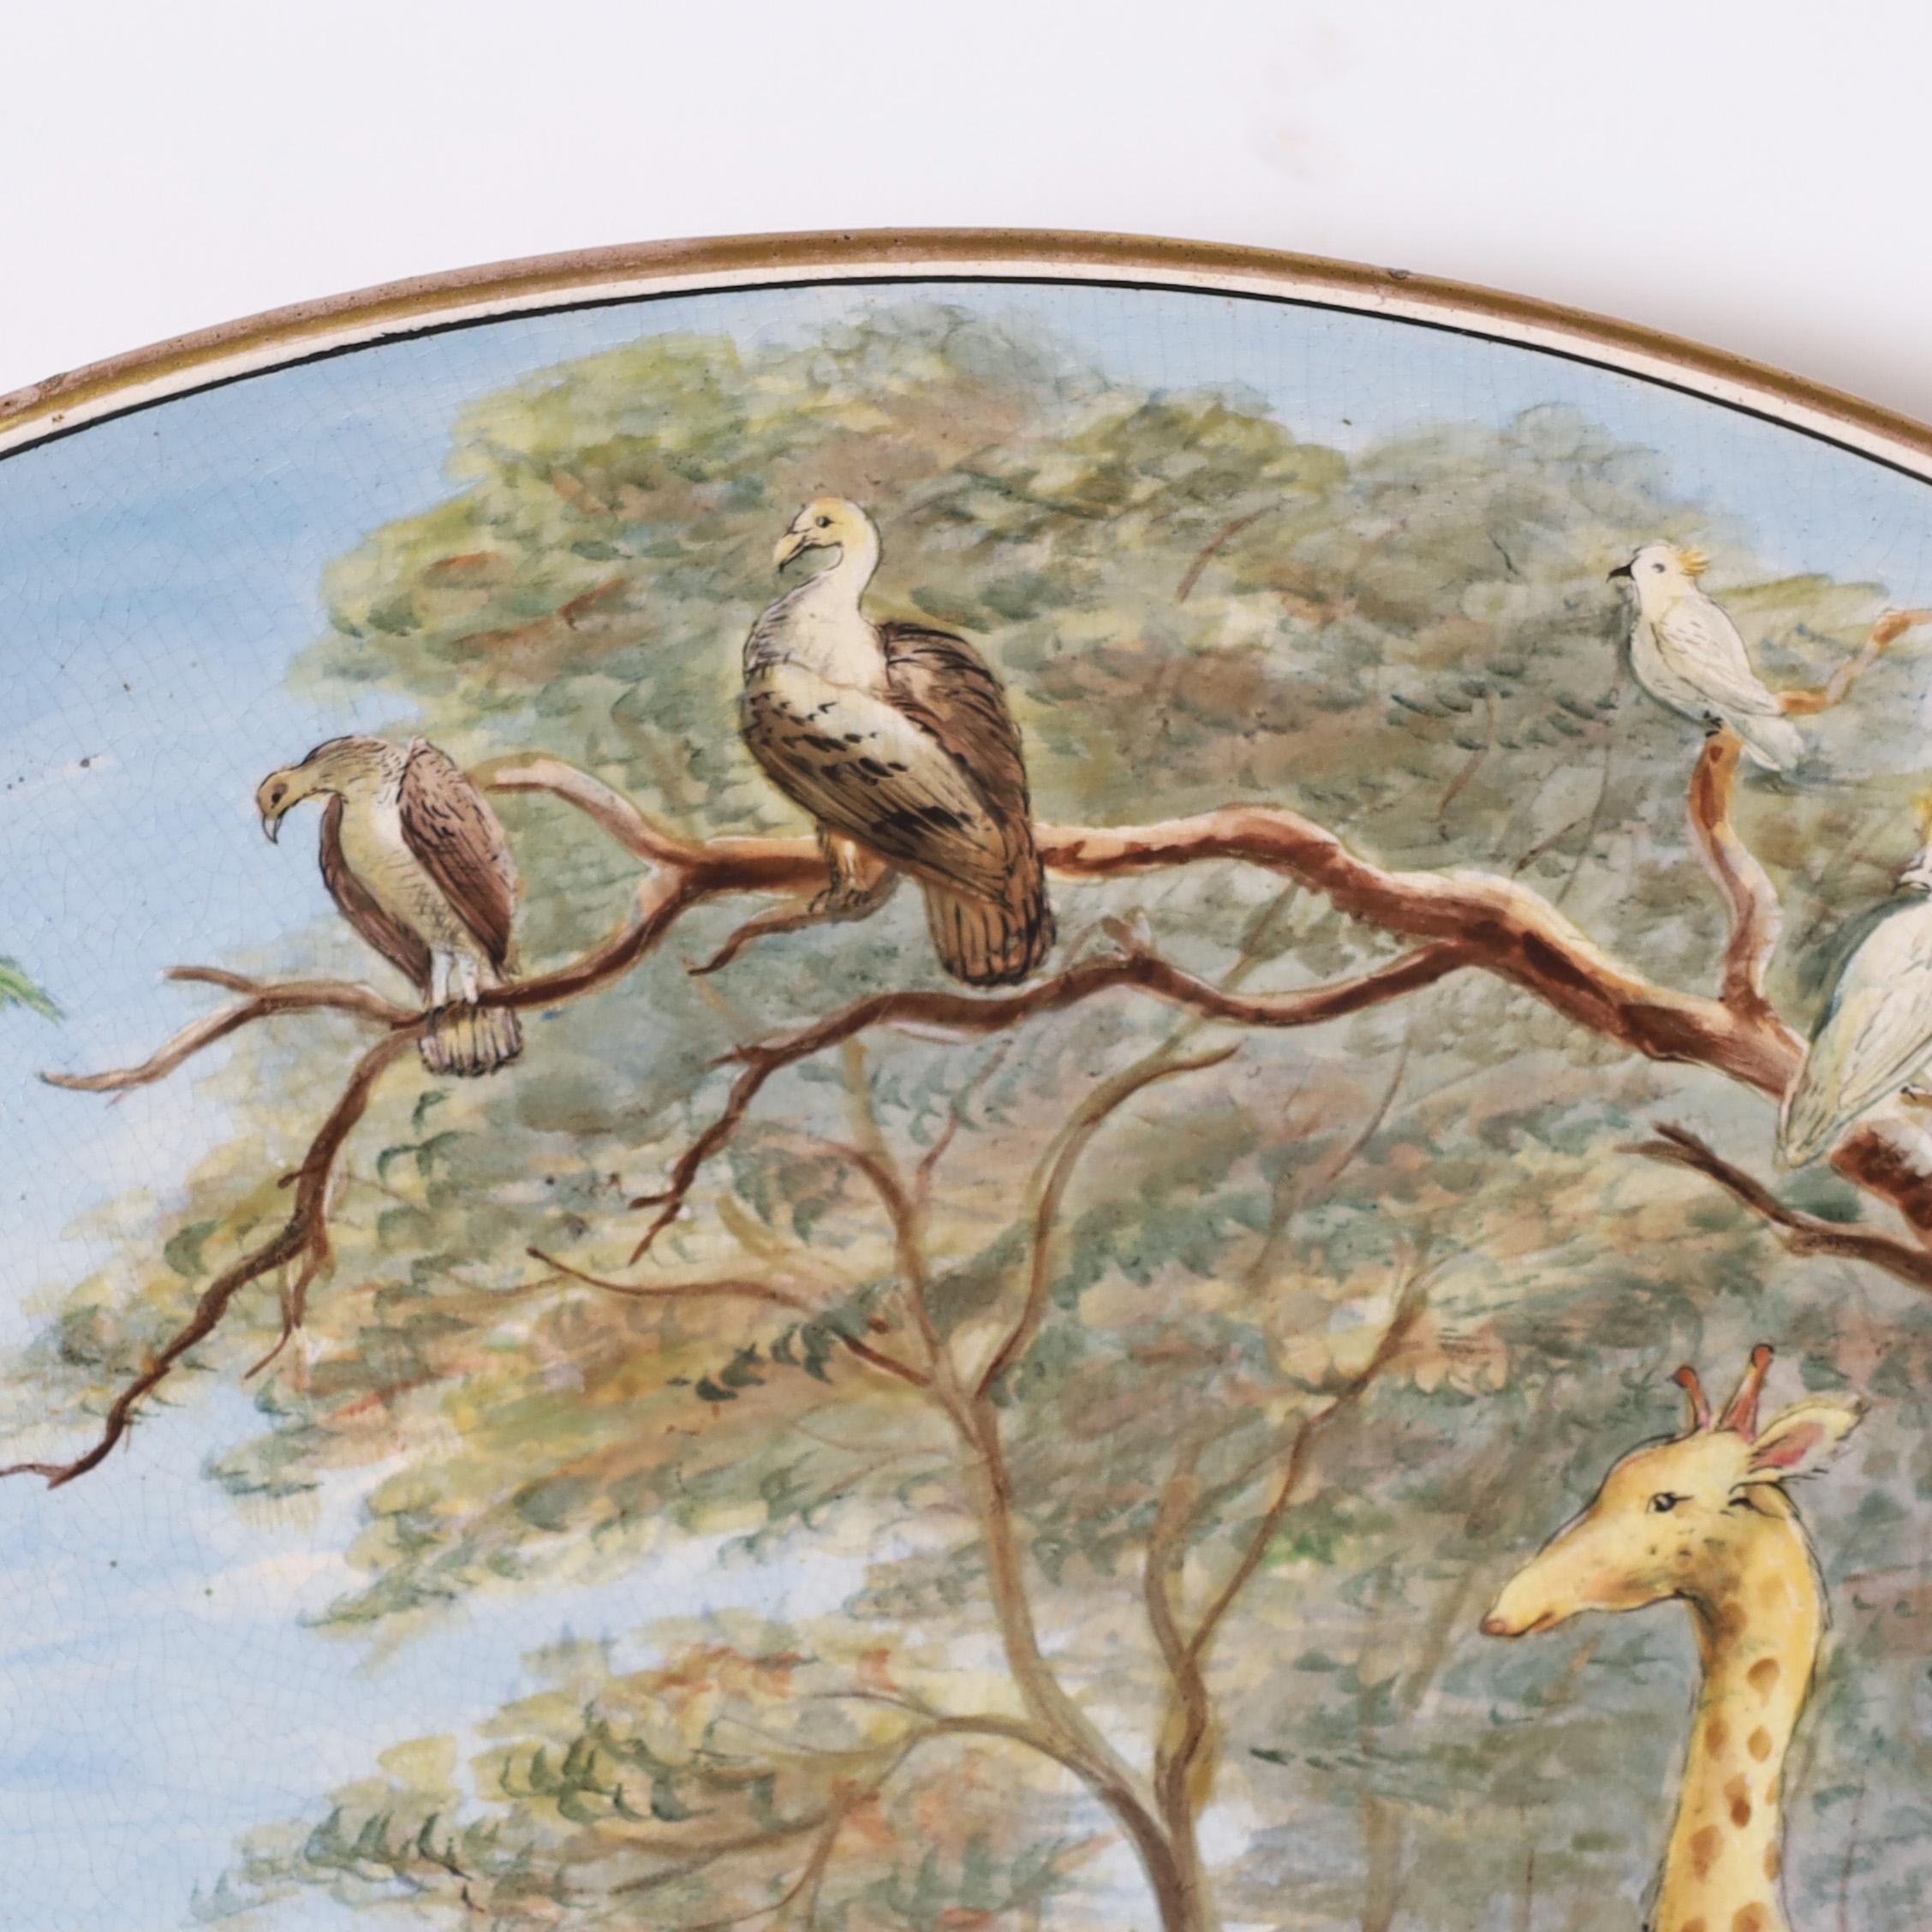 Charmantes englisches Keramik-Ladegerät aus dem 19. Jahrhundert, handdekoriert mit einer exzentrischen Gruppe von Tieren aus aller Welt. Signiert John Wilshaw und datiert 1885.